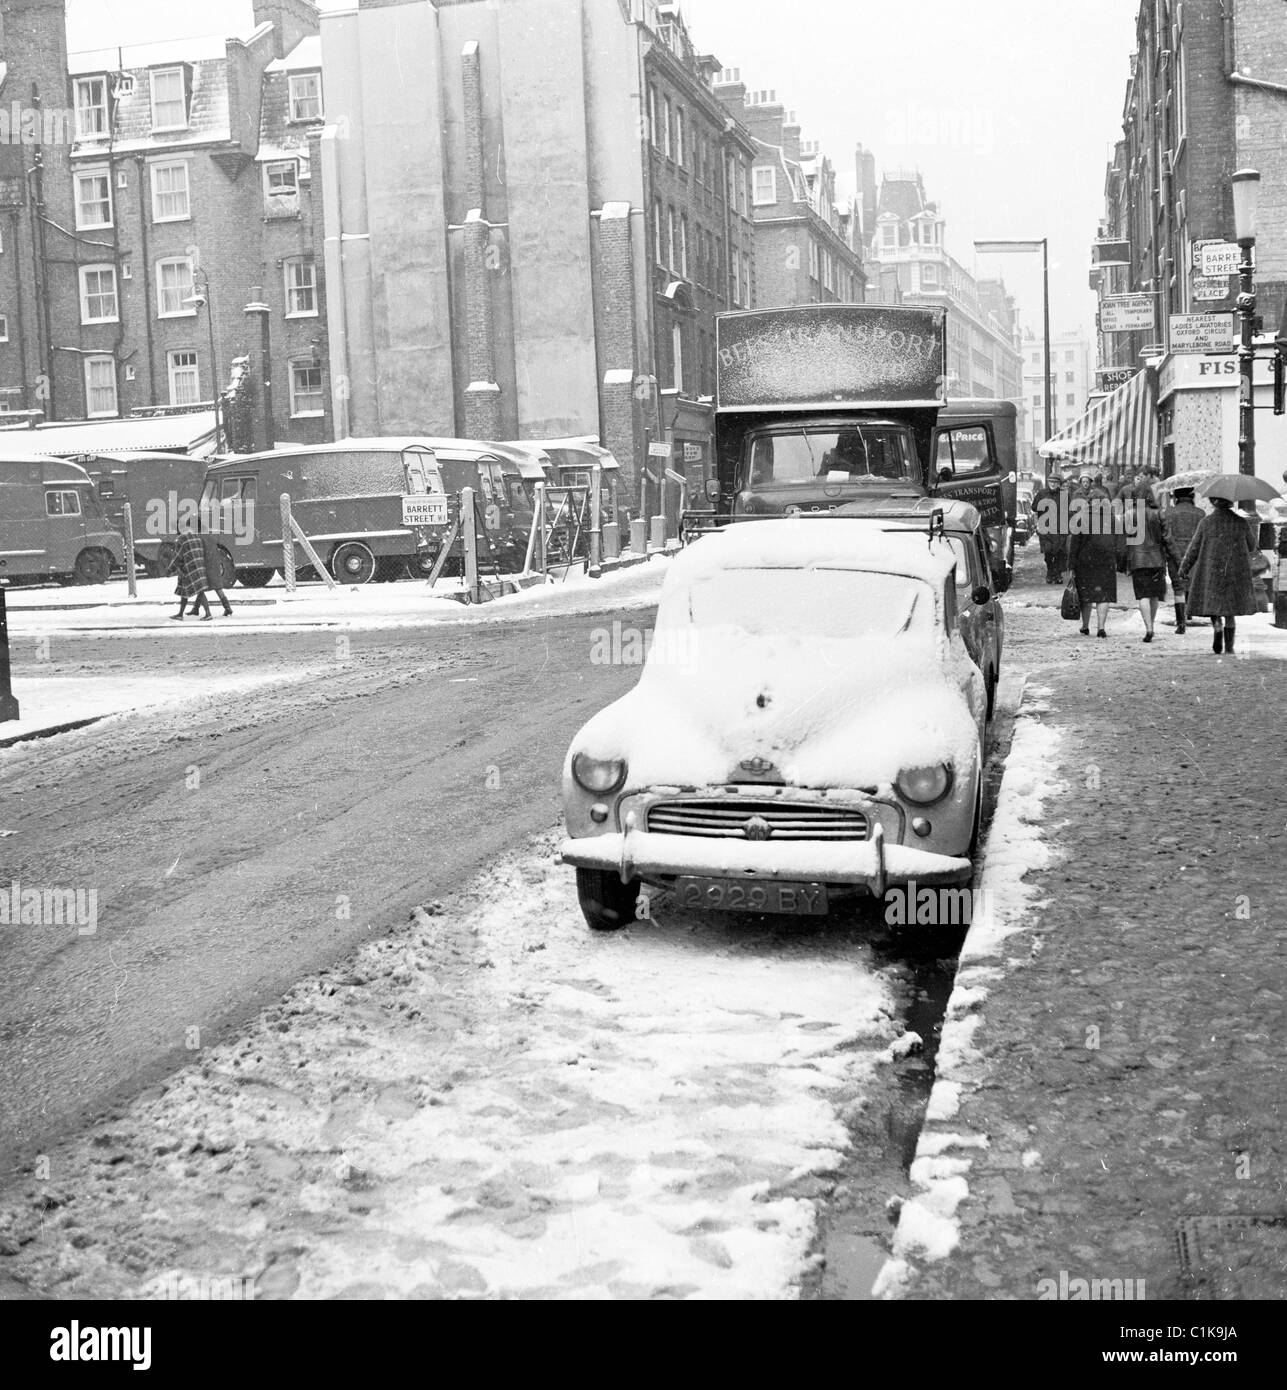 1950er Jahren Winterzeit, London und ein Auto geparkt an einer Nebenstraße, bedeckt mit Schnee in diesem historischen Bild von J Allan Cash. Stockfoto